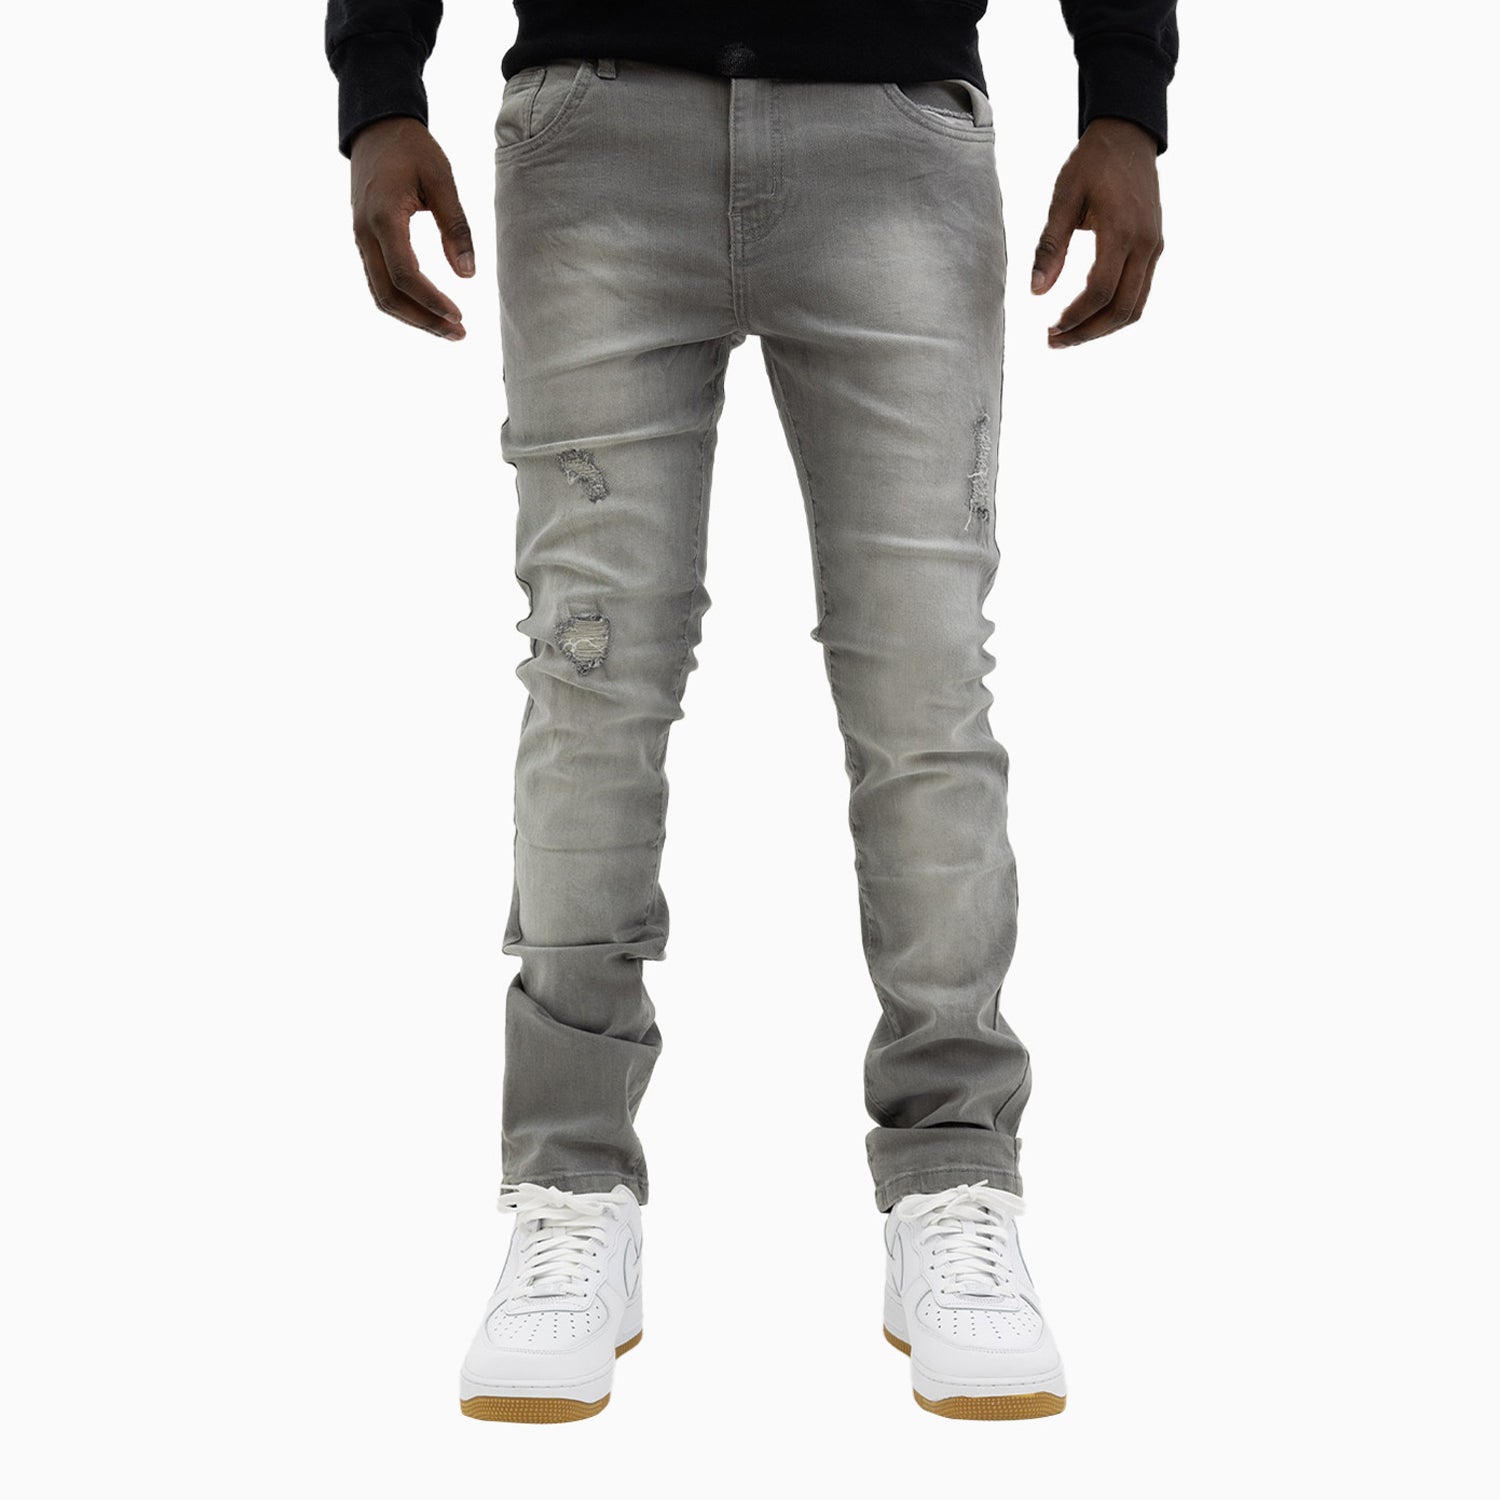 Men's Savar Light Grey Slim Denim Jeans Pant